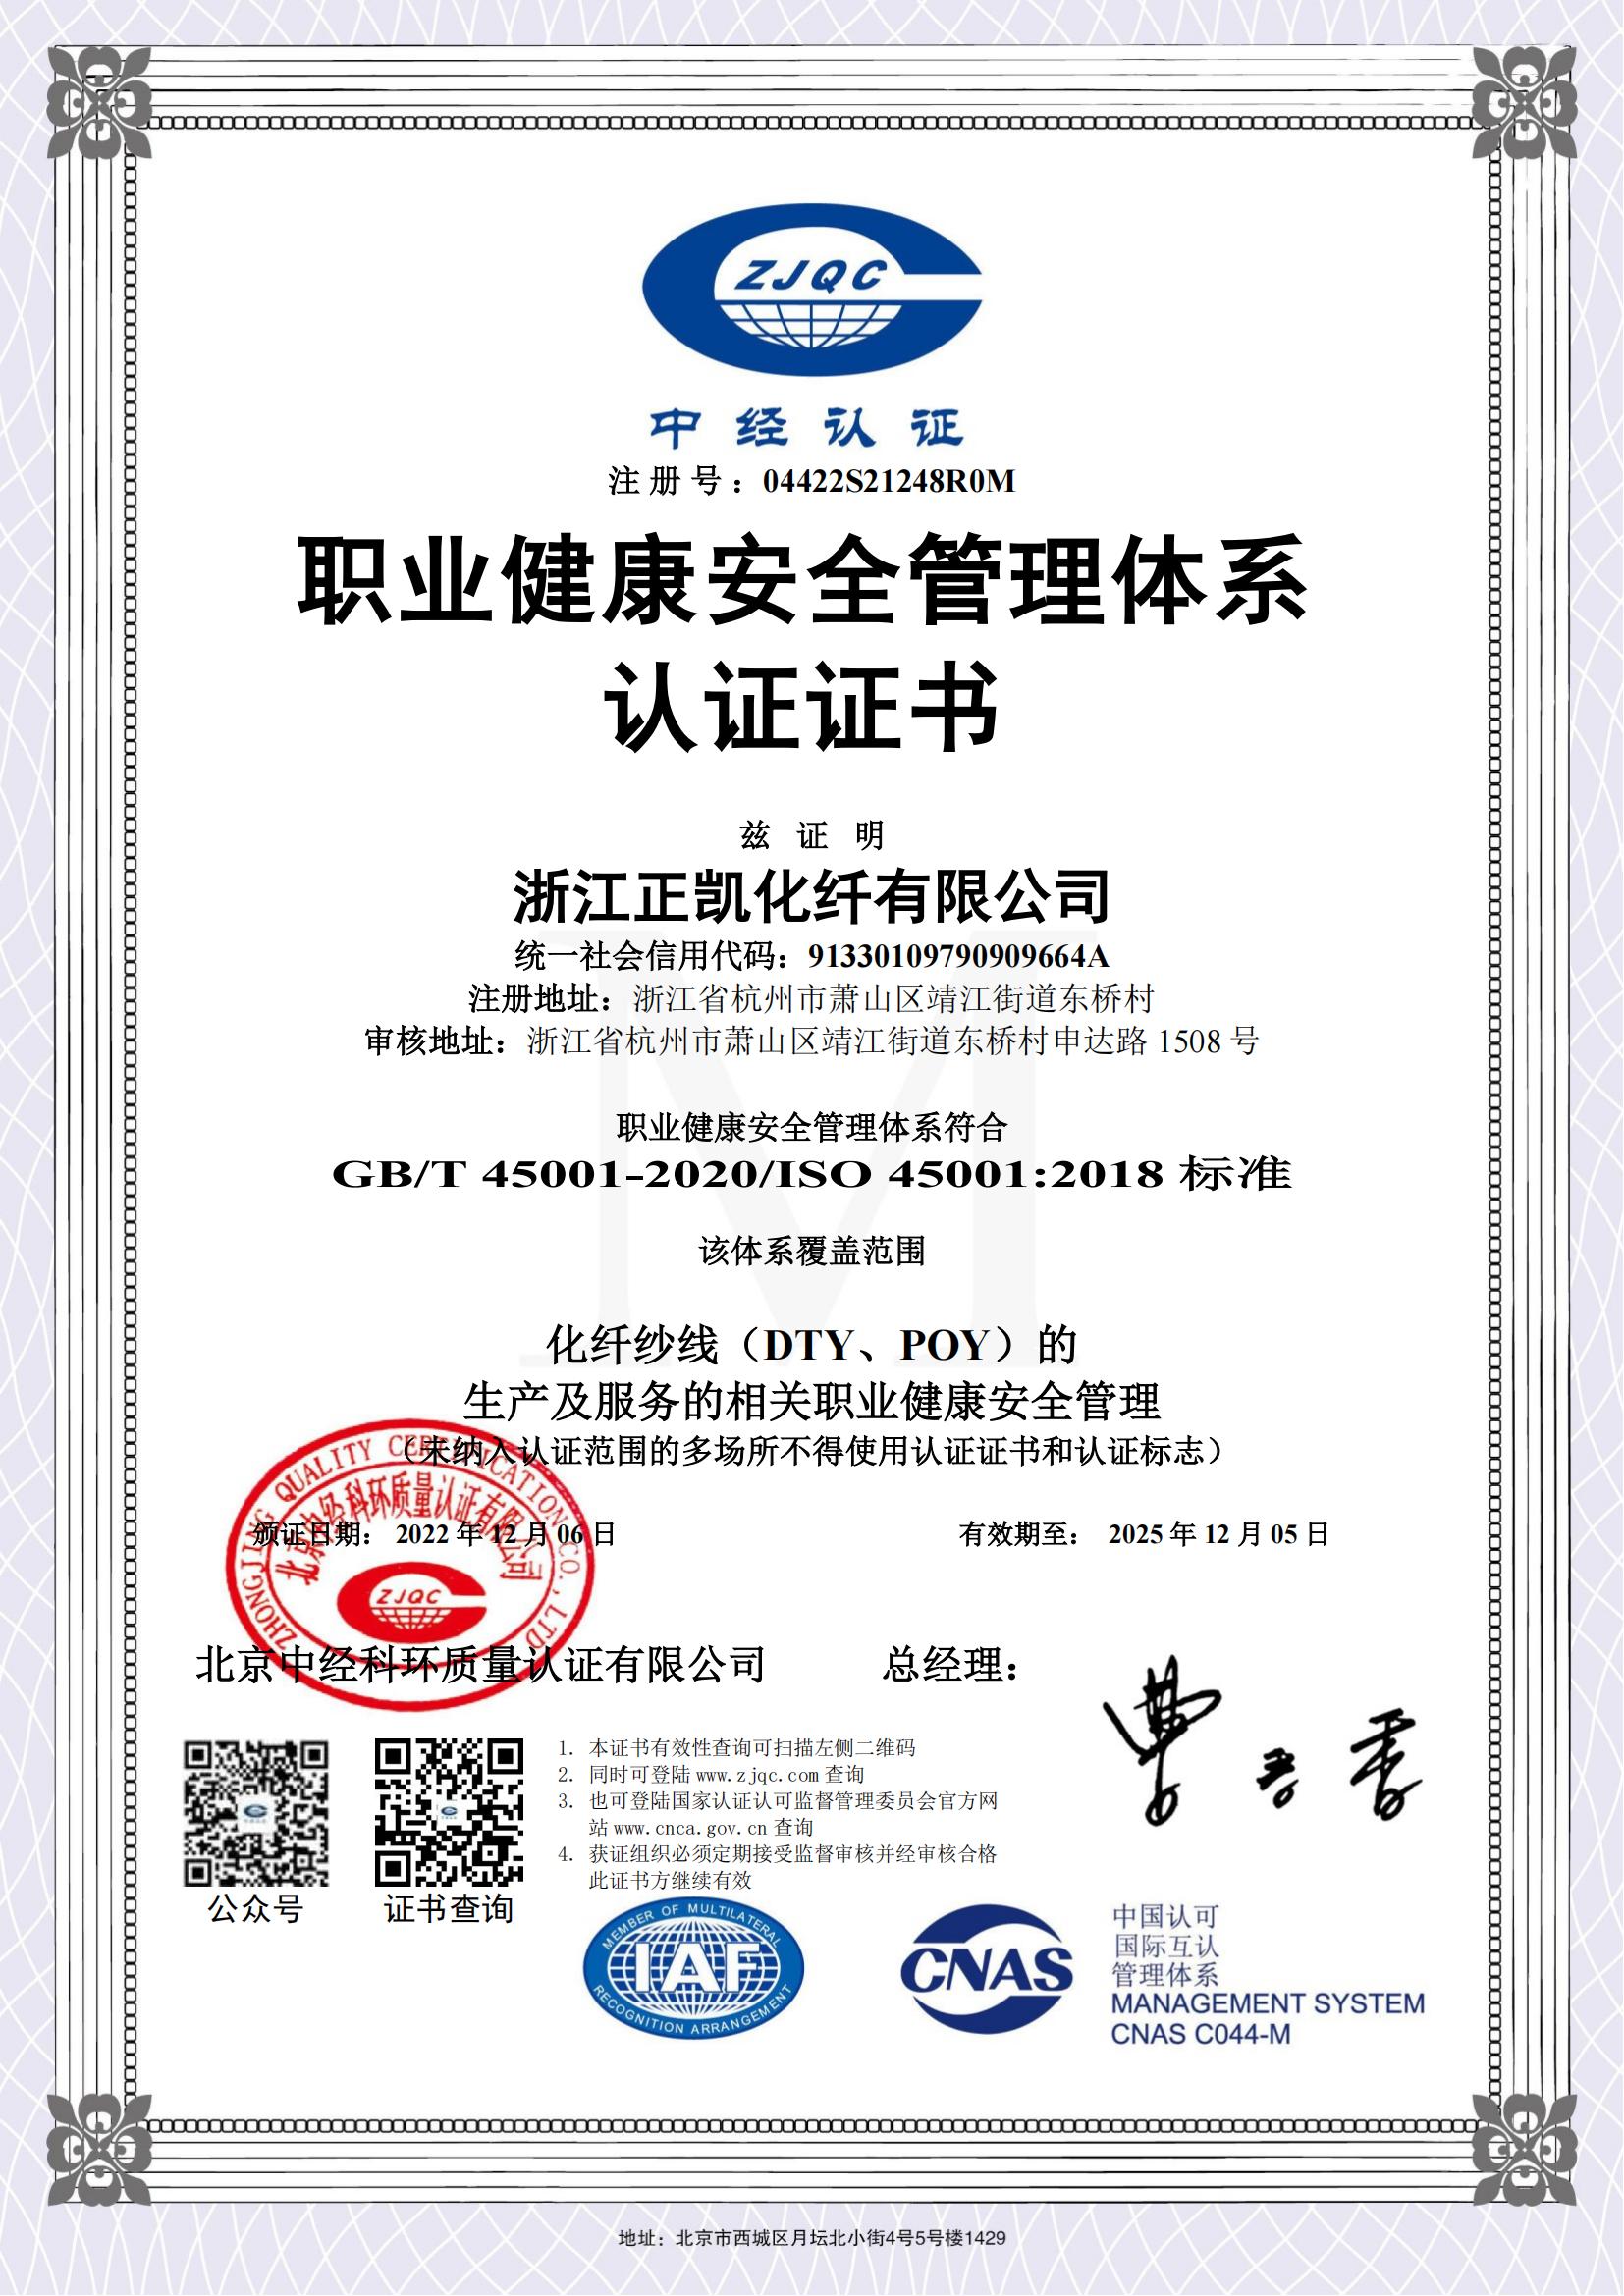 正凯化纤职业健康安全管理体系认证证书